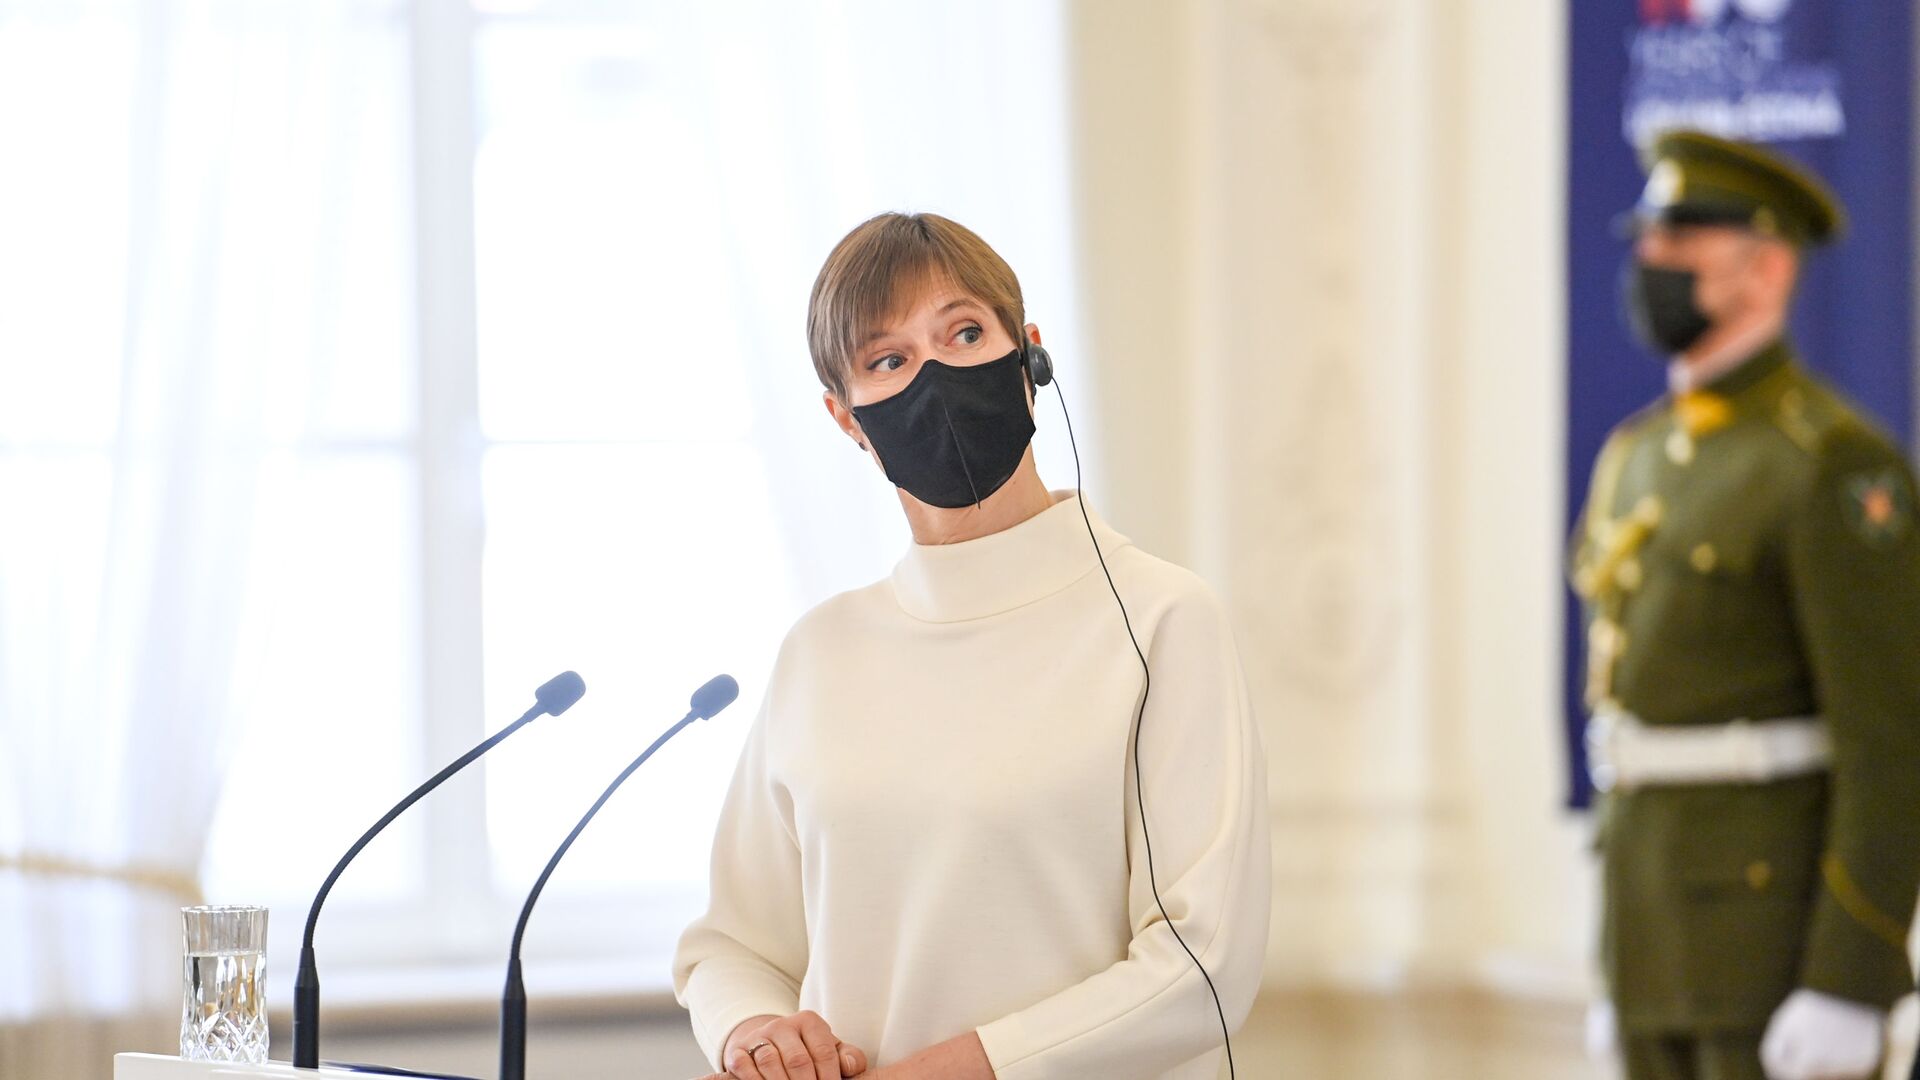 Estijos prezidentė Kersti Kaljulaid - Sputnik Lietuva, 1920, 27.05.2021